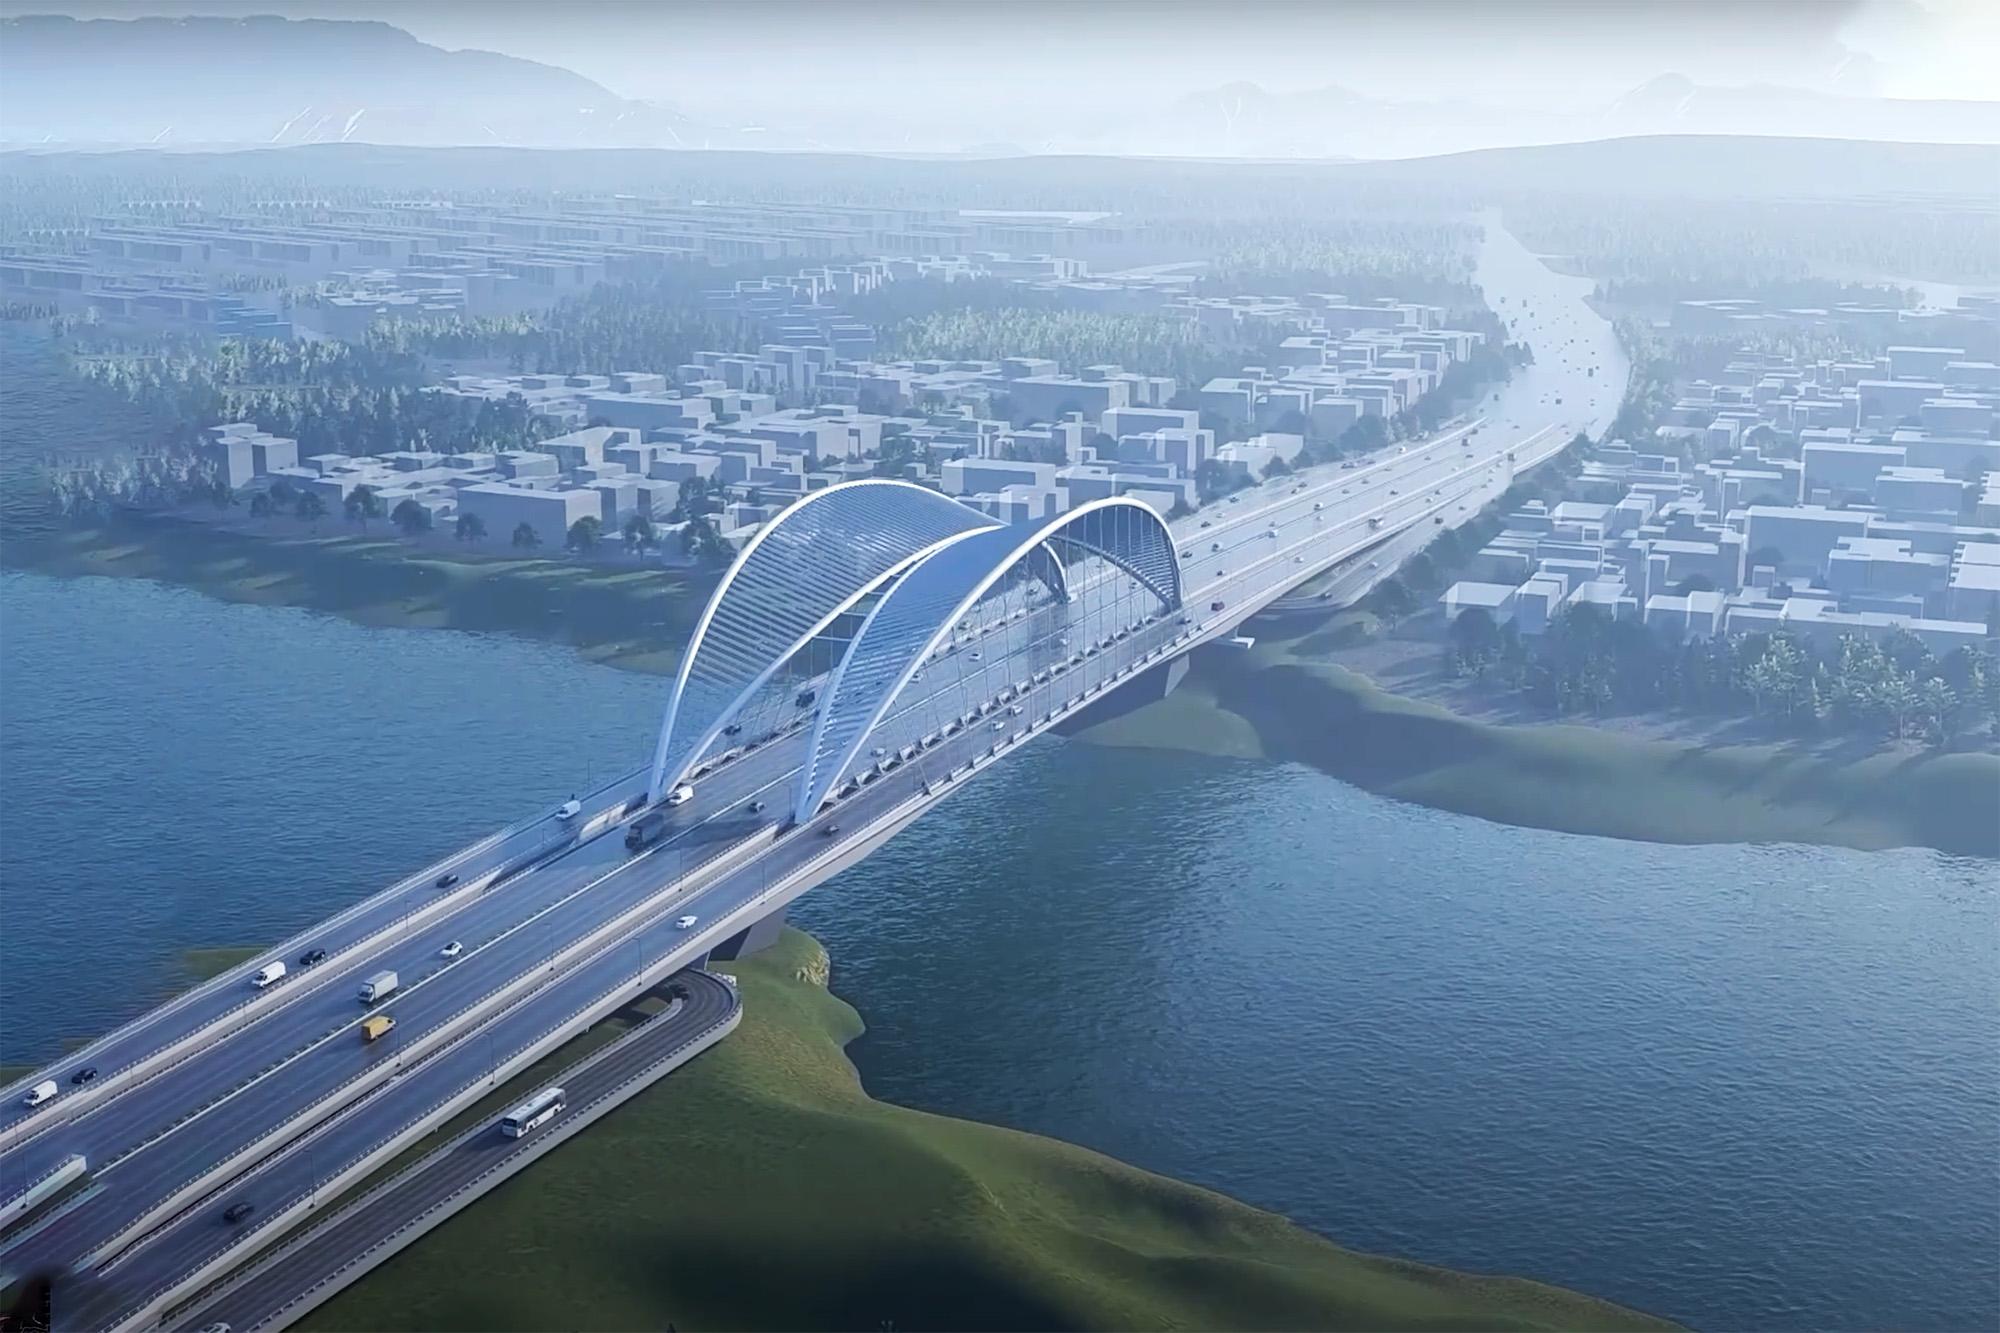 Hơn 1.200 tỷ đồng xây cầu ở cửa ngõ TP Vũng Tàu